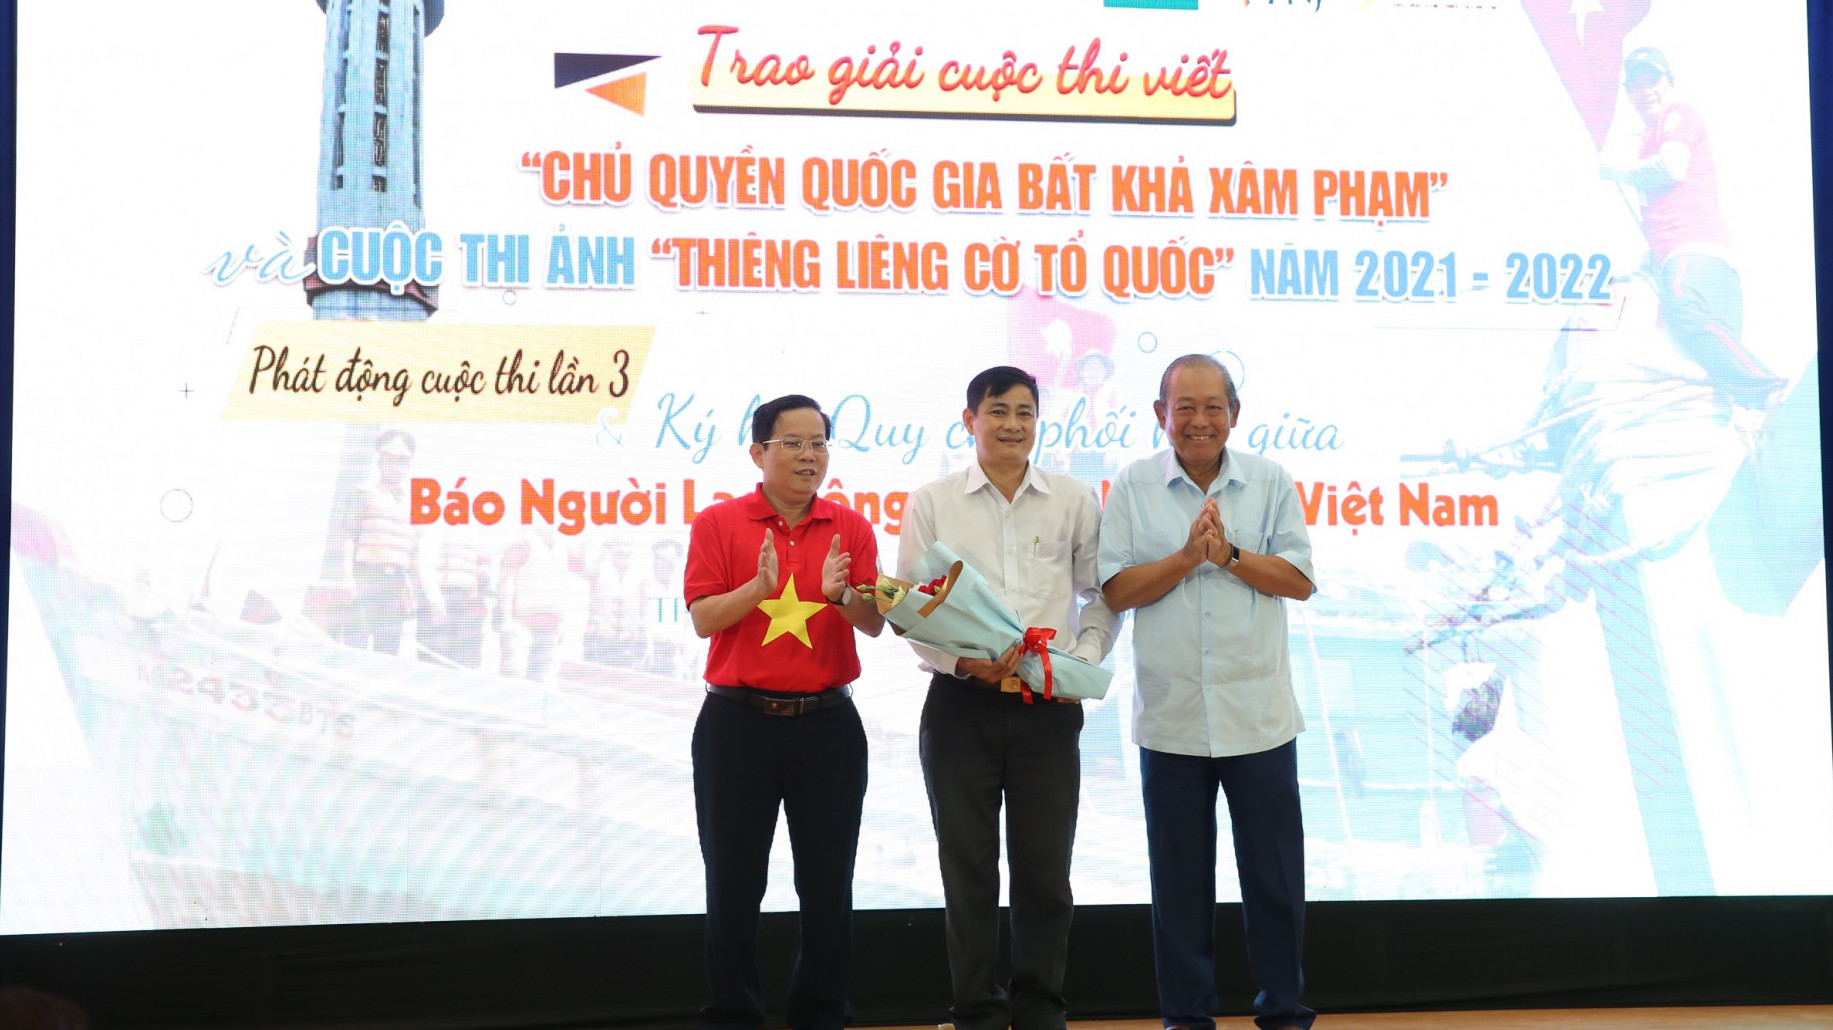 Tác giả Nguyễn Trung Trực (giữa) nhận giải Nhất cuộc thi ảnh 'Thiêng liêng lá cờ Tổ quốc với bộ ảnh Tổ quốc trong trái tim người lính mũ nồi xanh